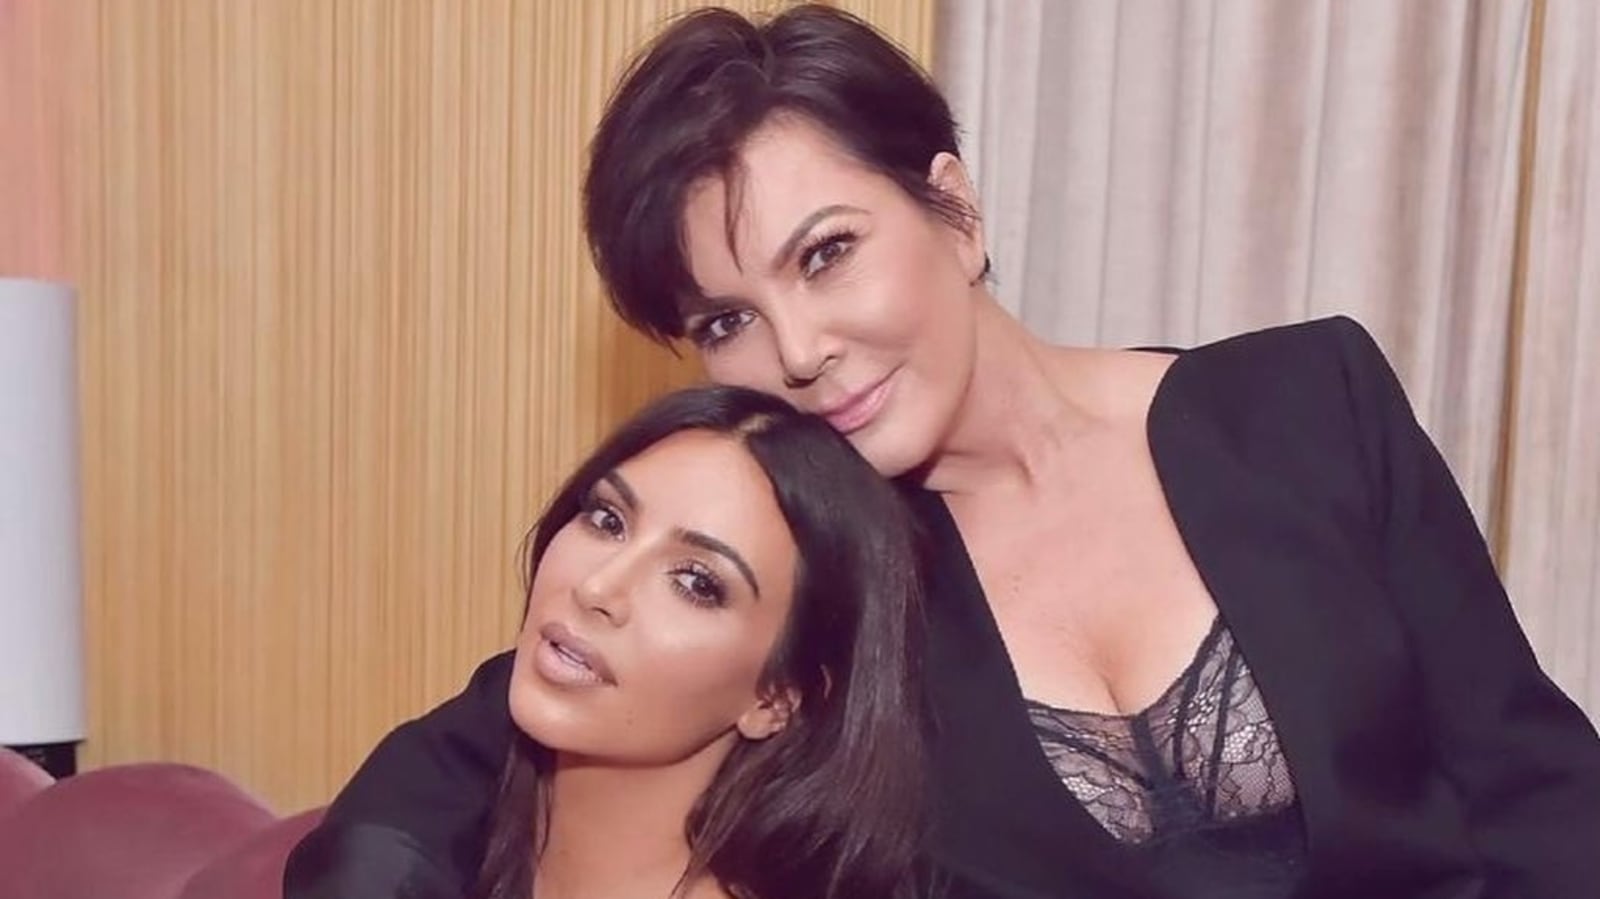 Poring Sex Videos - Kris Jenner denies leaking daughter Kim Kardashian's sex tape in new video  - Hindustan Times